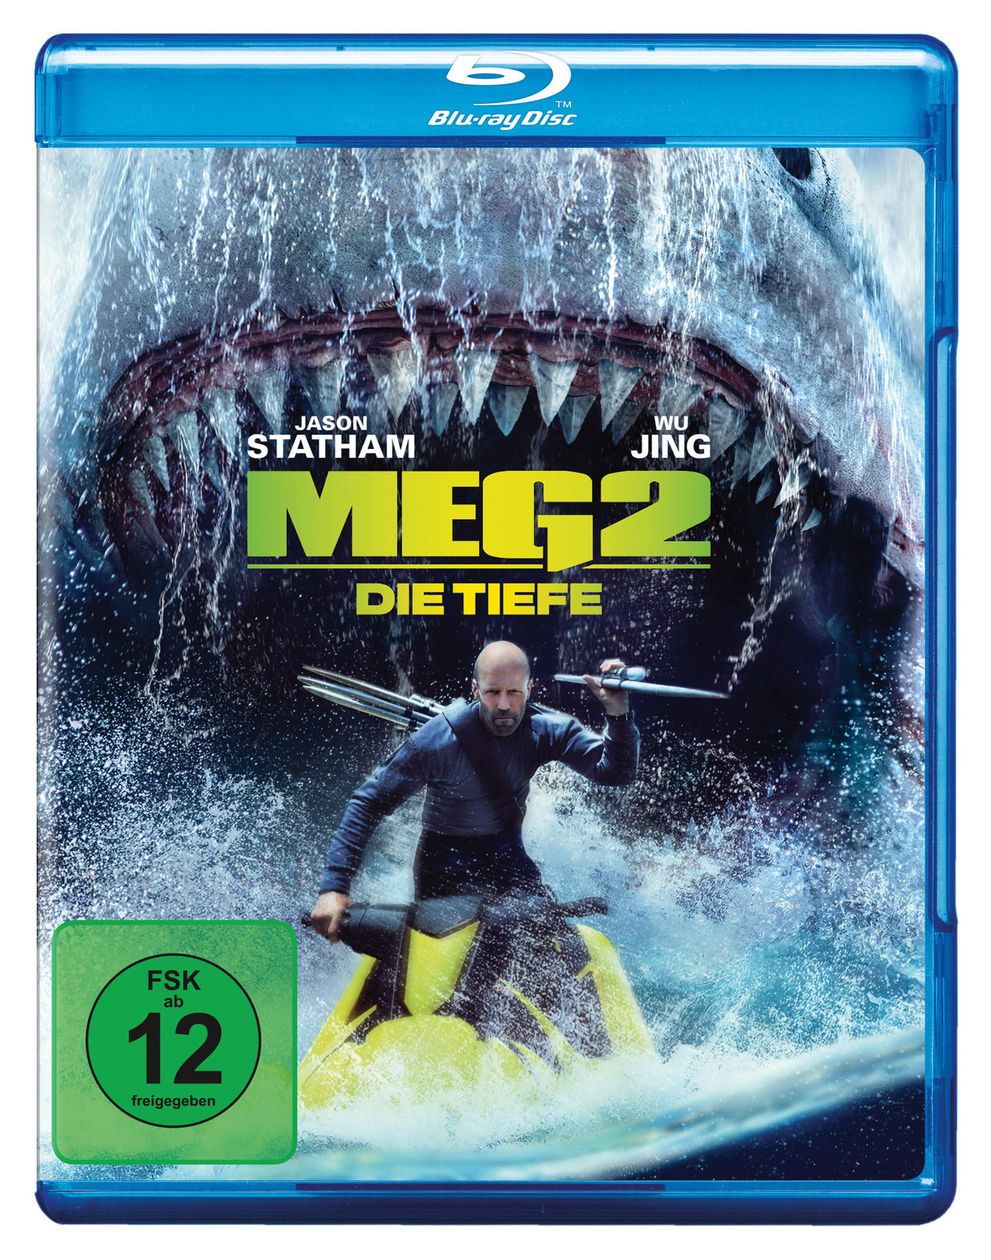 Meg 2: Die Tiefe (Blu-Ray) 